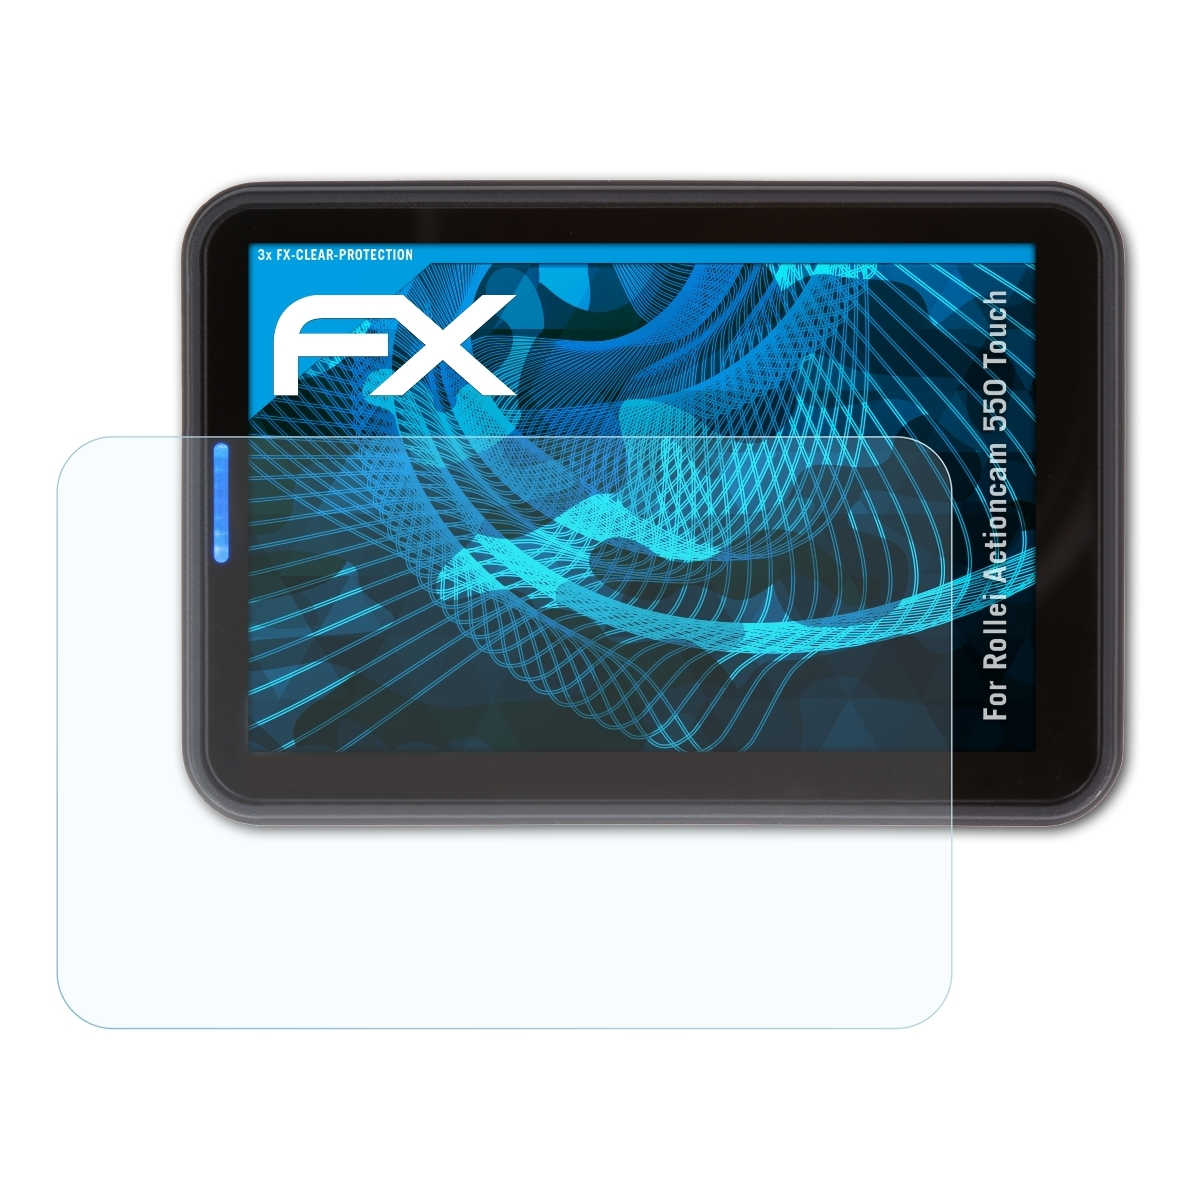 ATFOLIX 3x FX-Clear Displayschutz(für Rollei Touch) Actioncam 550